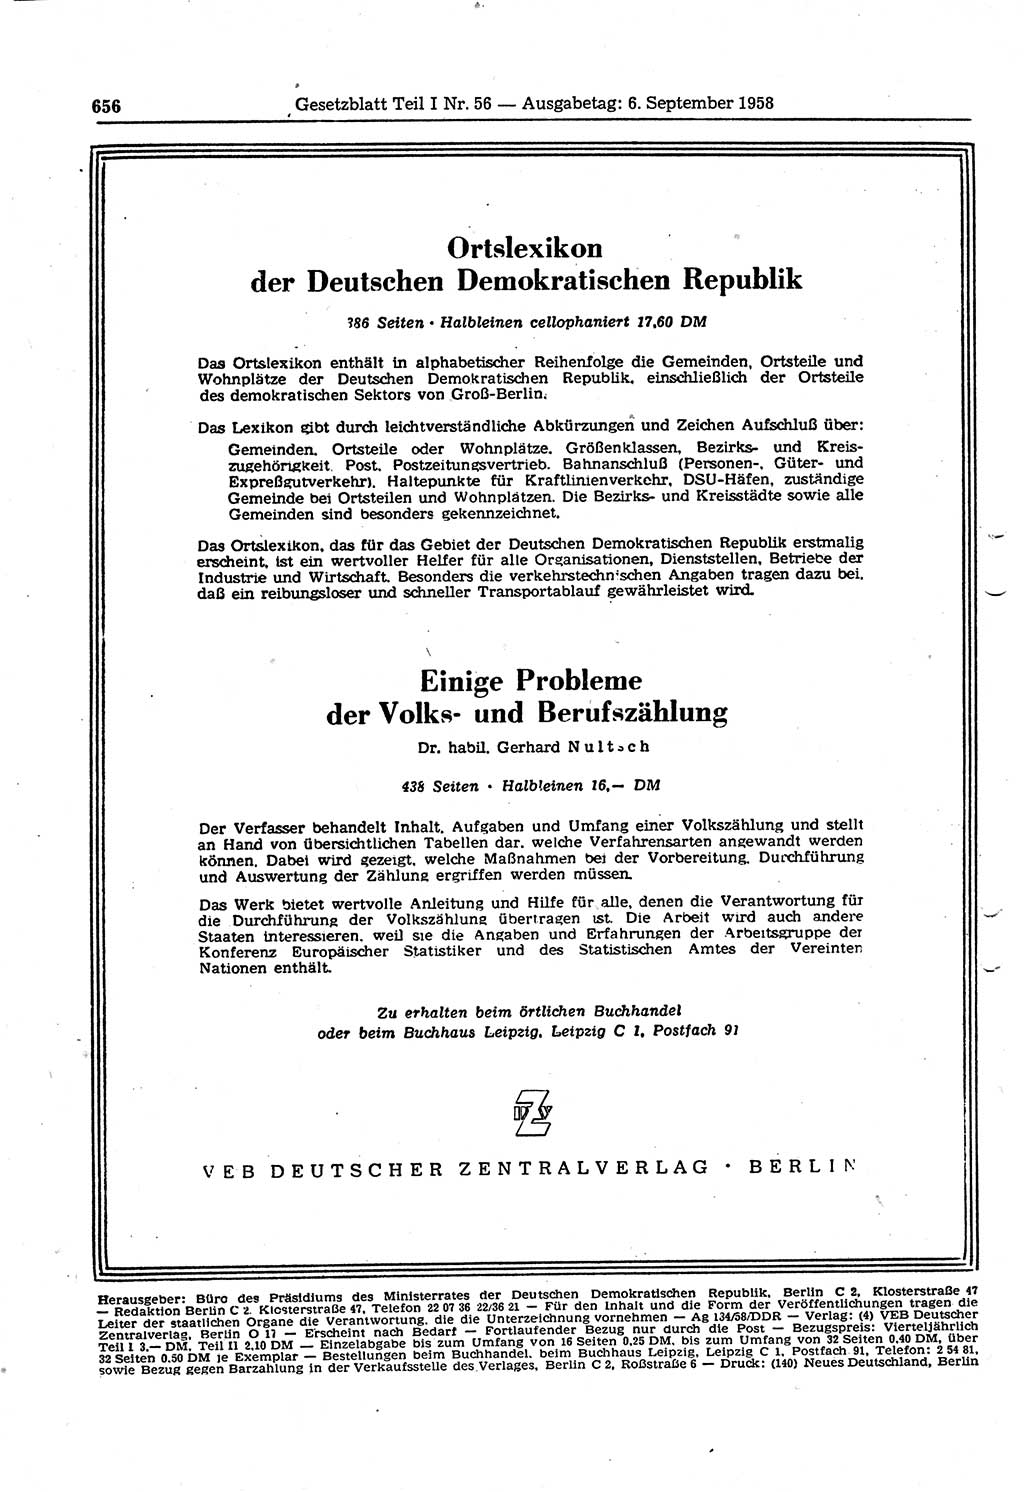 Gesetzblatt (GBl.) der Deutschen Demokratischen Republik (DDR) Teil Ⅰ 1958, Seite 656 (GBl. DDR Ⅰ 1958, S. 656)